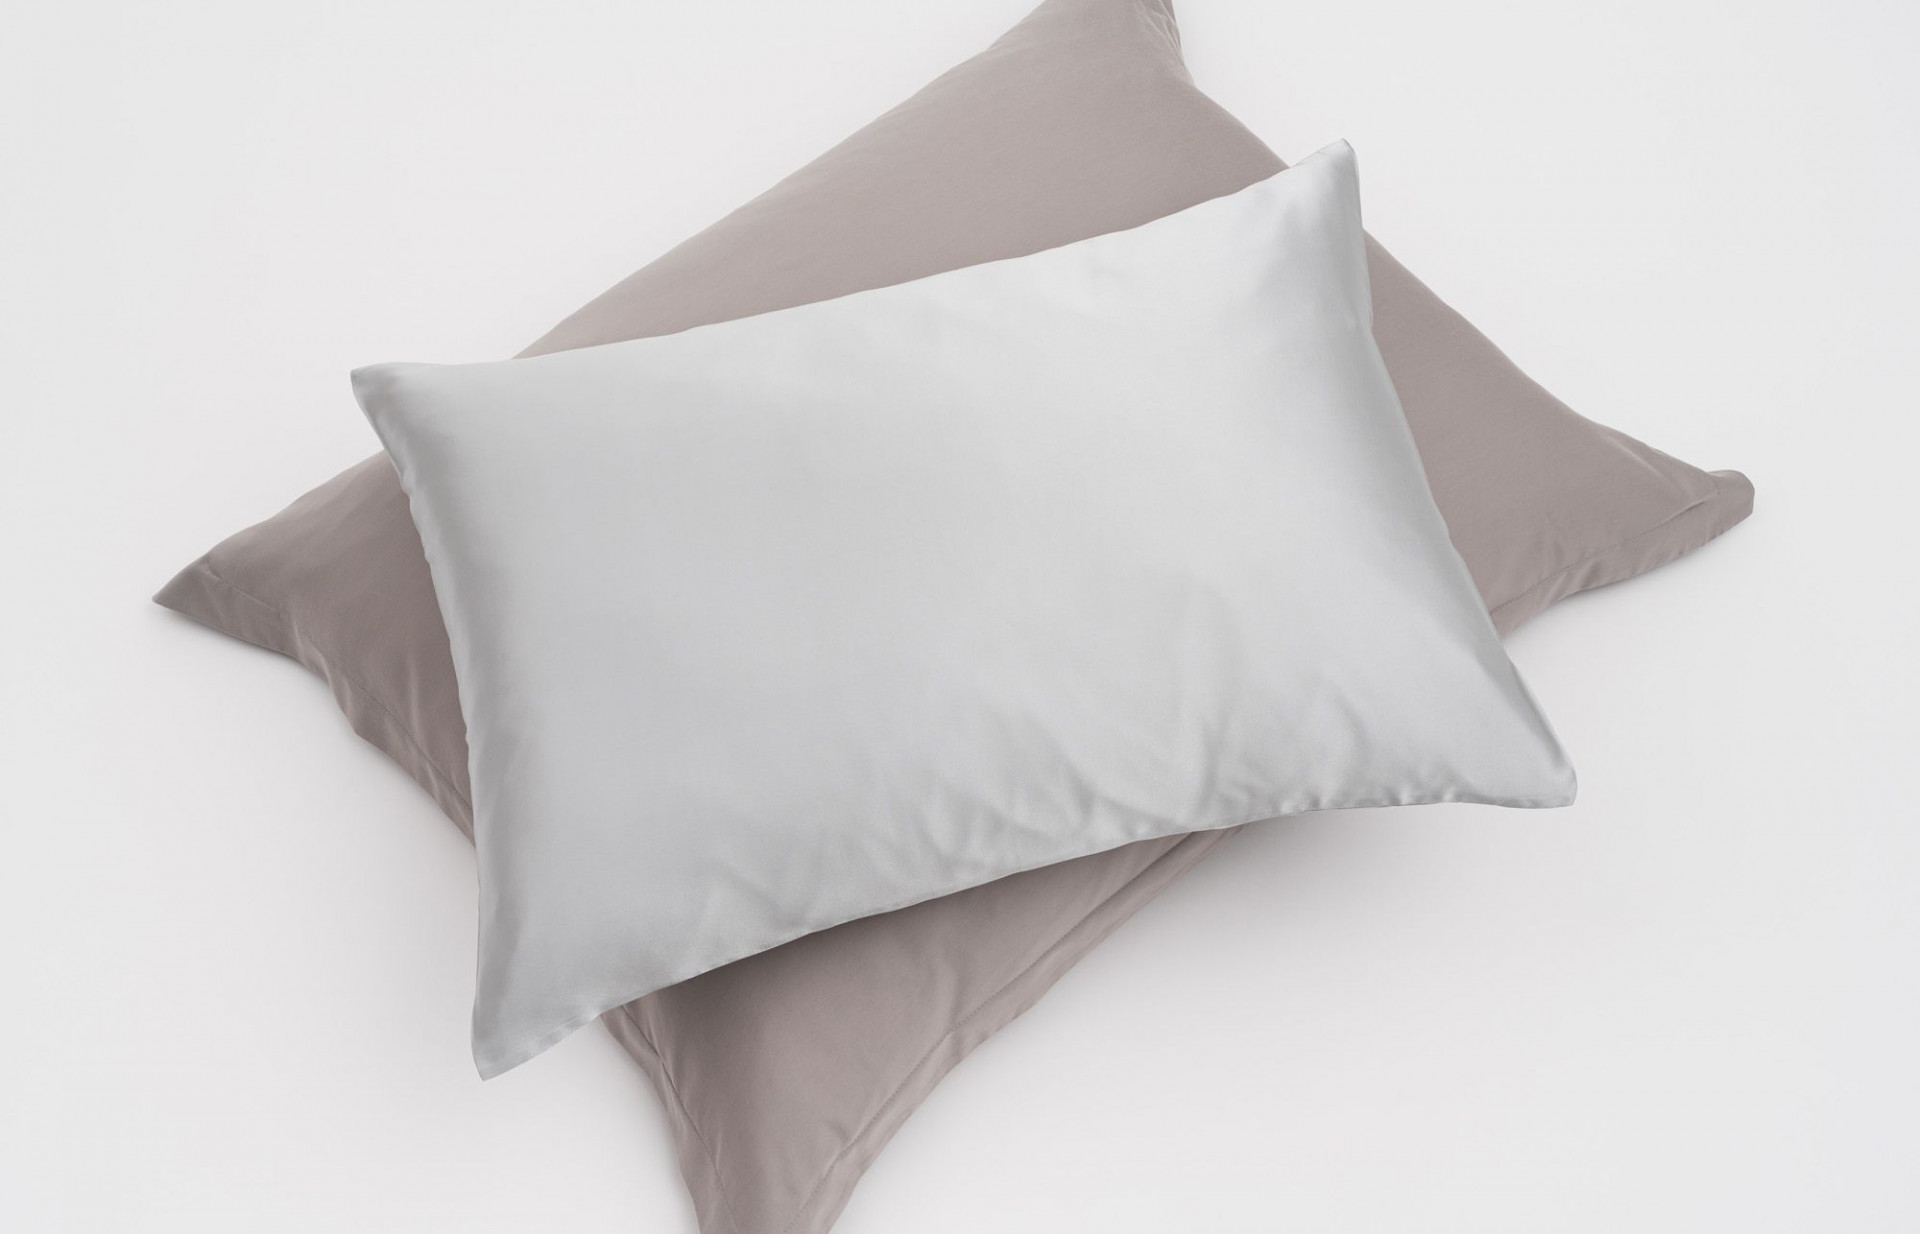 Delicate Silk promění vaši spánkovou rutinu ve výjimečný zážitek.